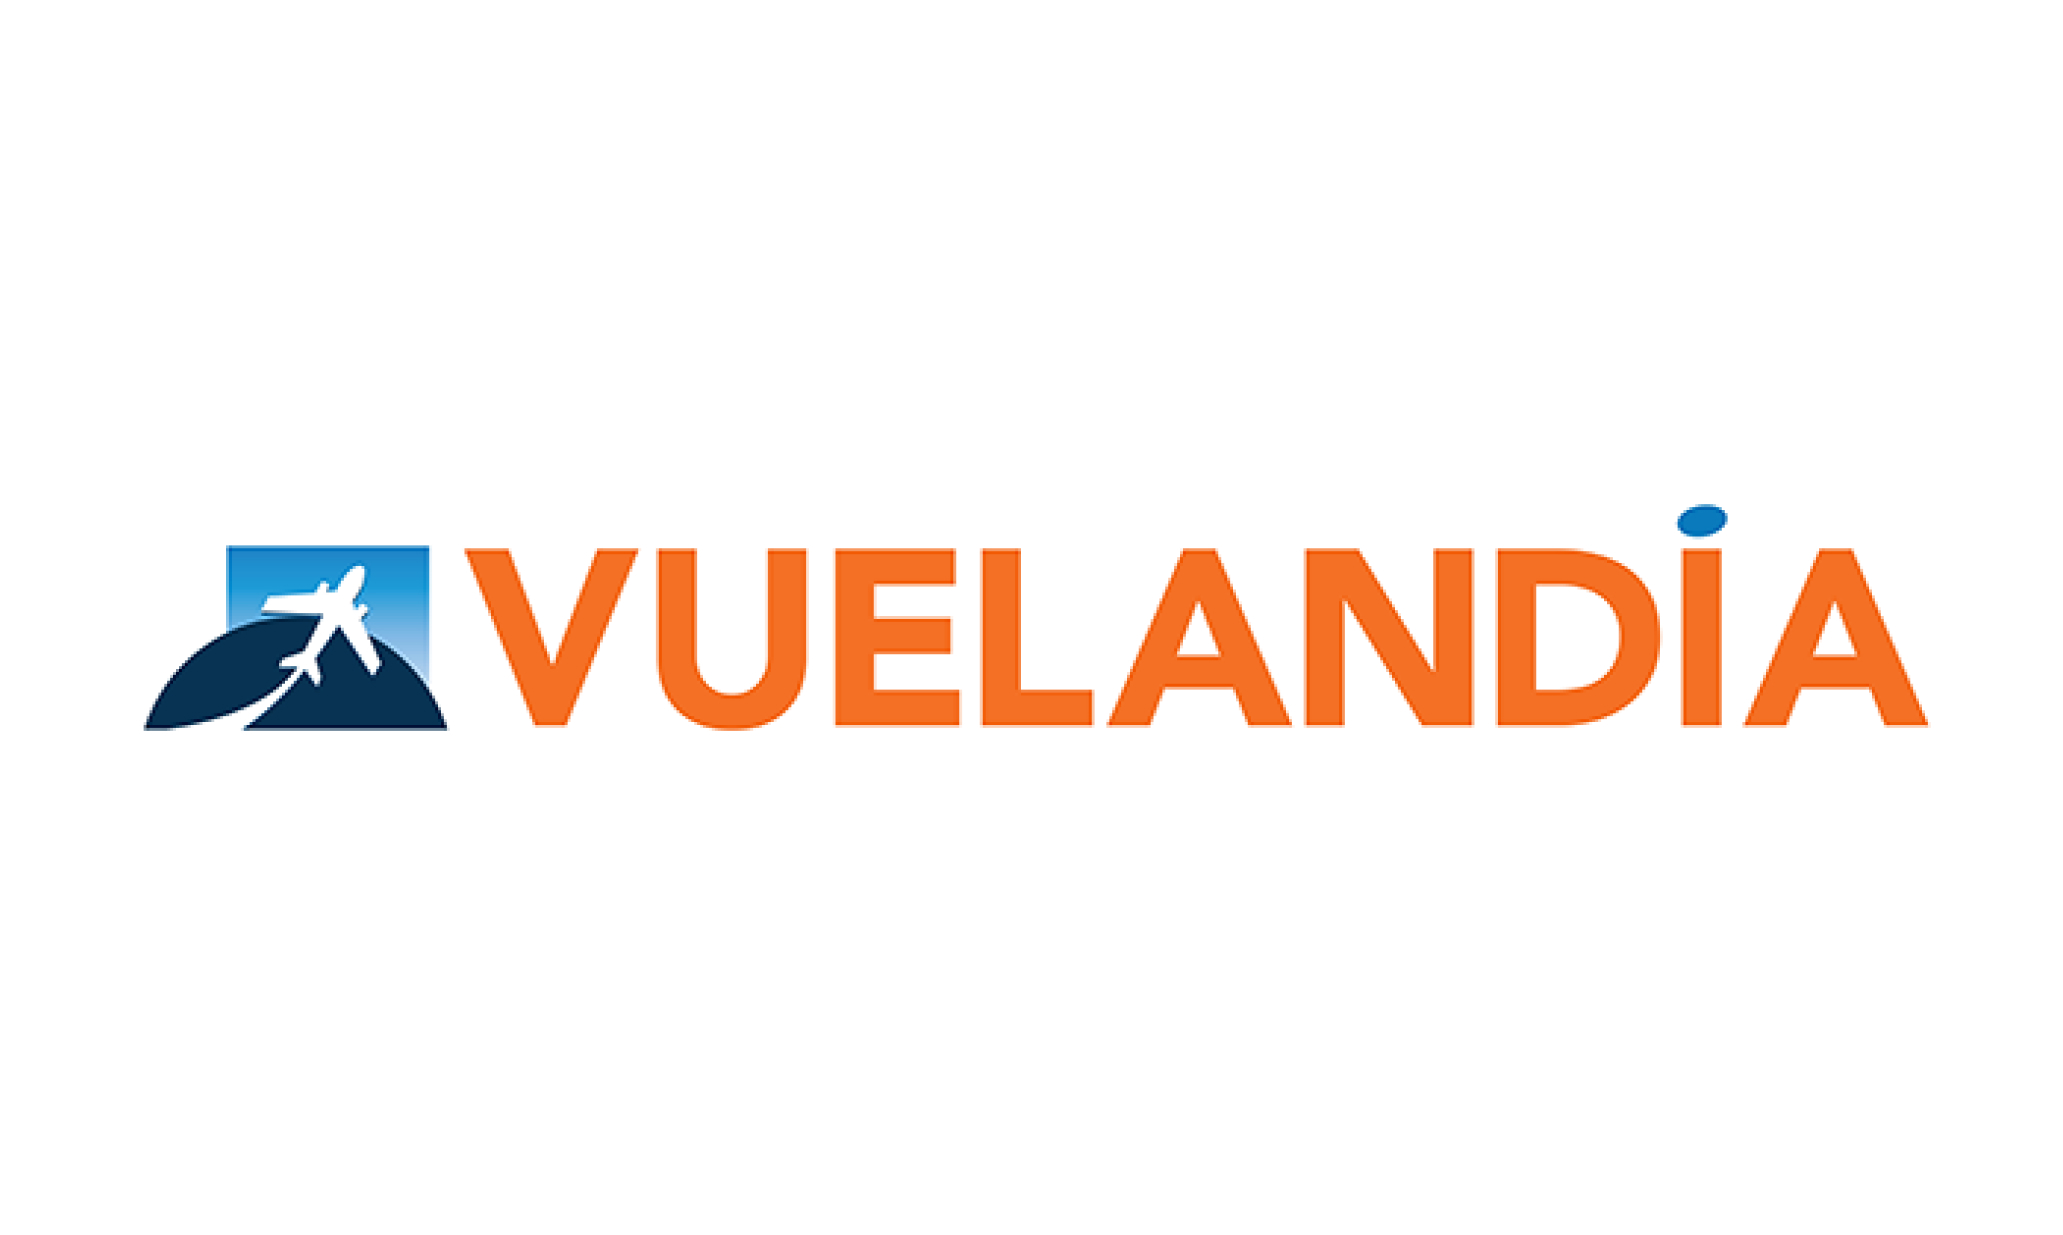 Vuelandia logo